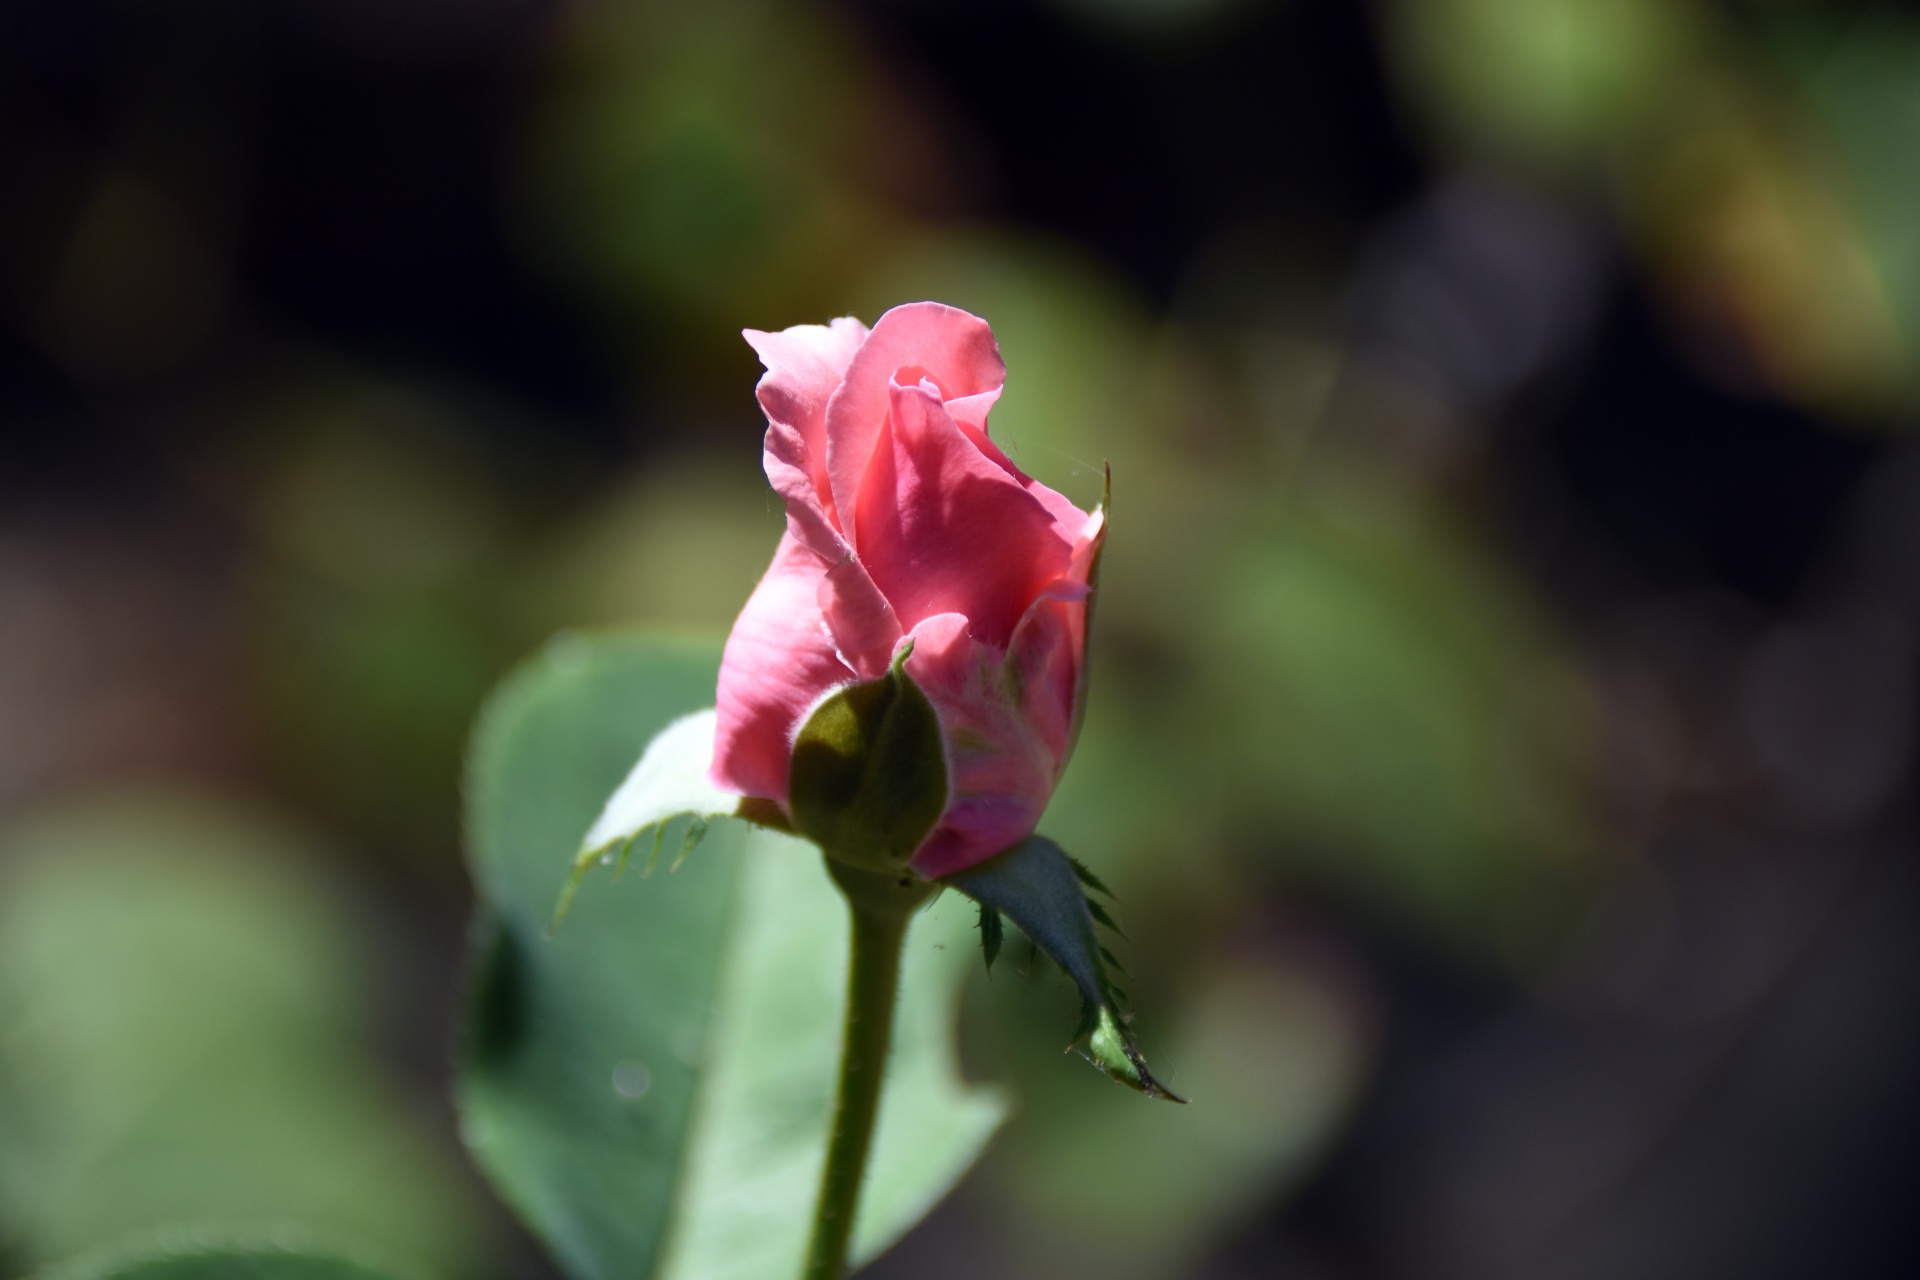 Pink Rose bud